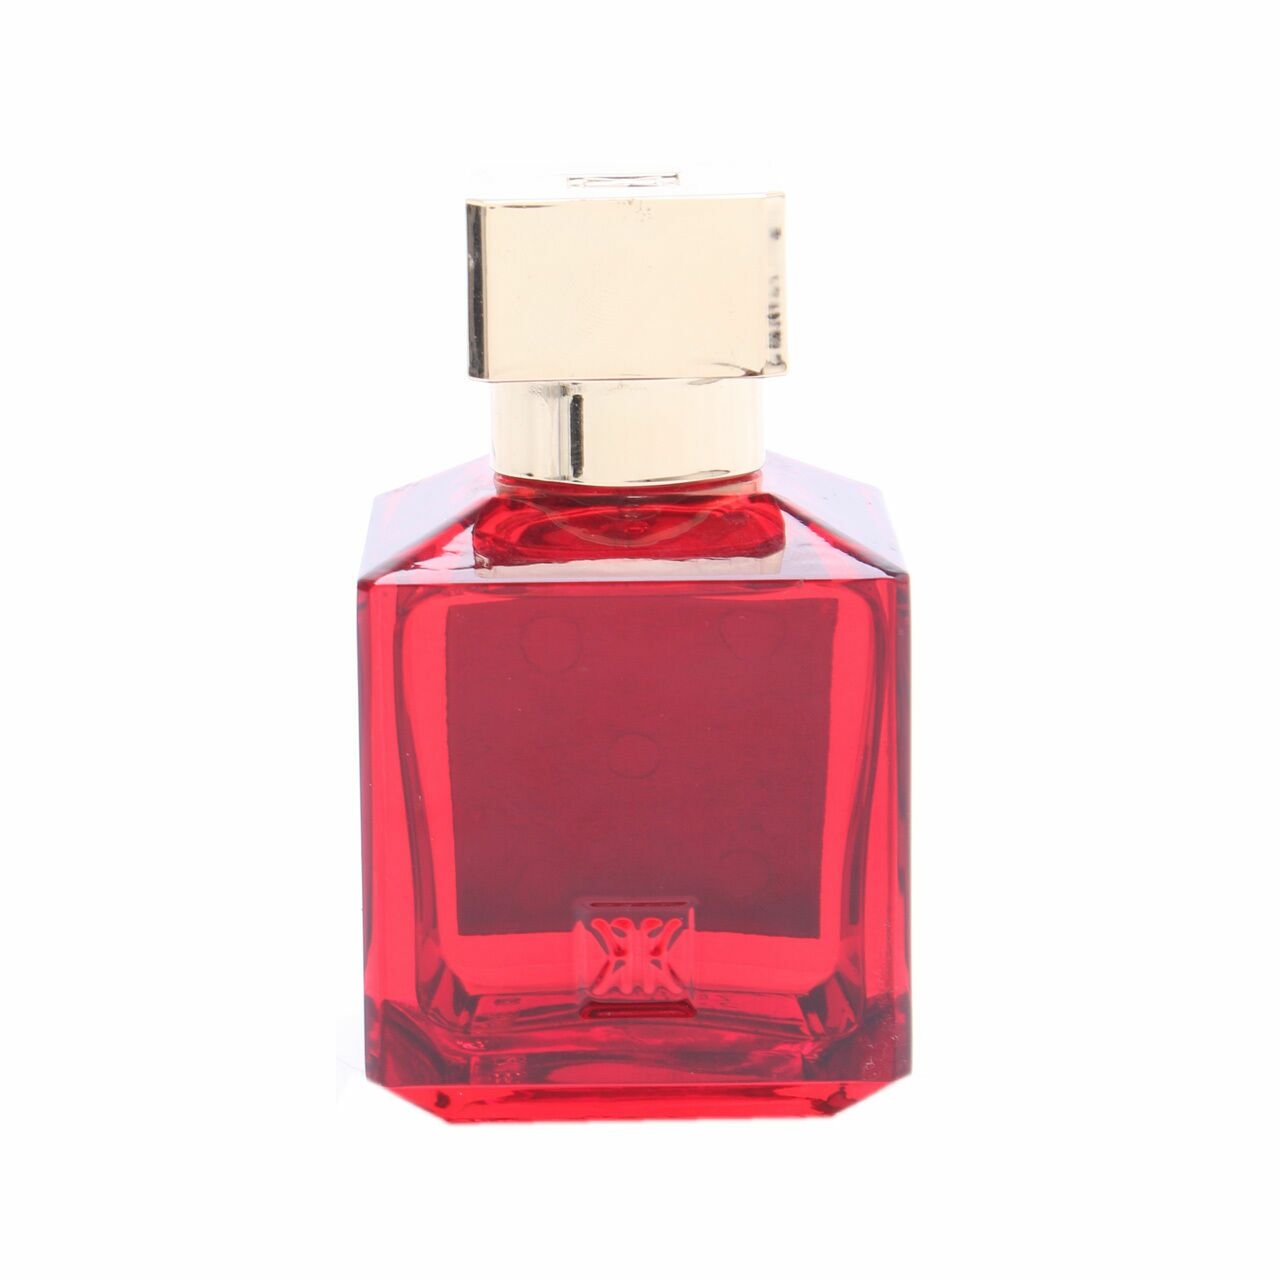 Baccarat Maison Francis Kurkdjian Paris Rouge 540 Extrait De Parfum Fragrance